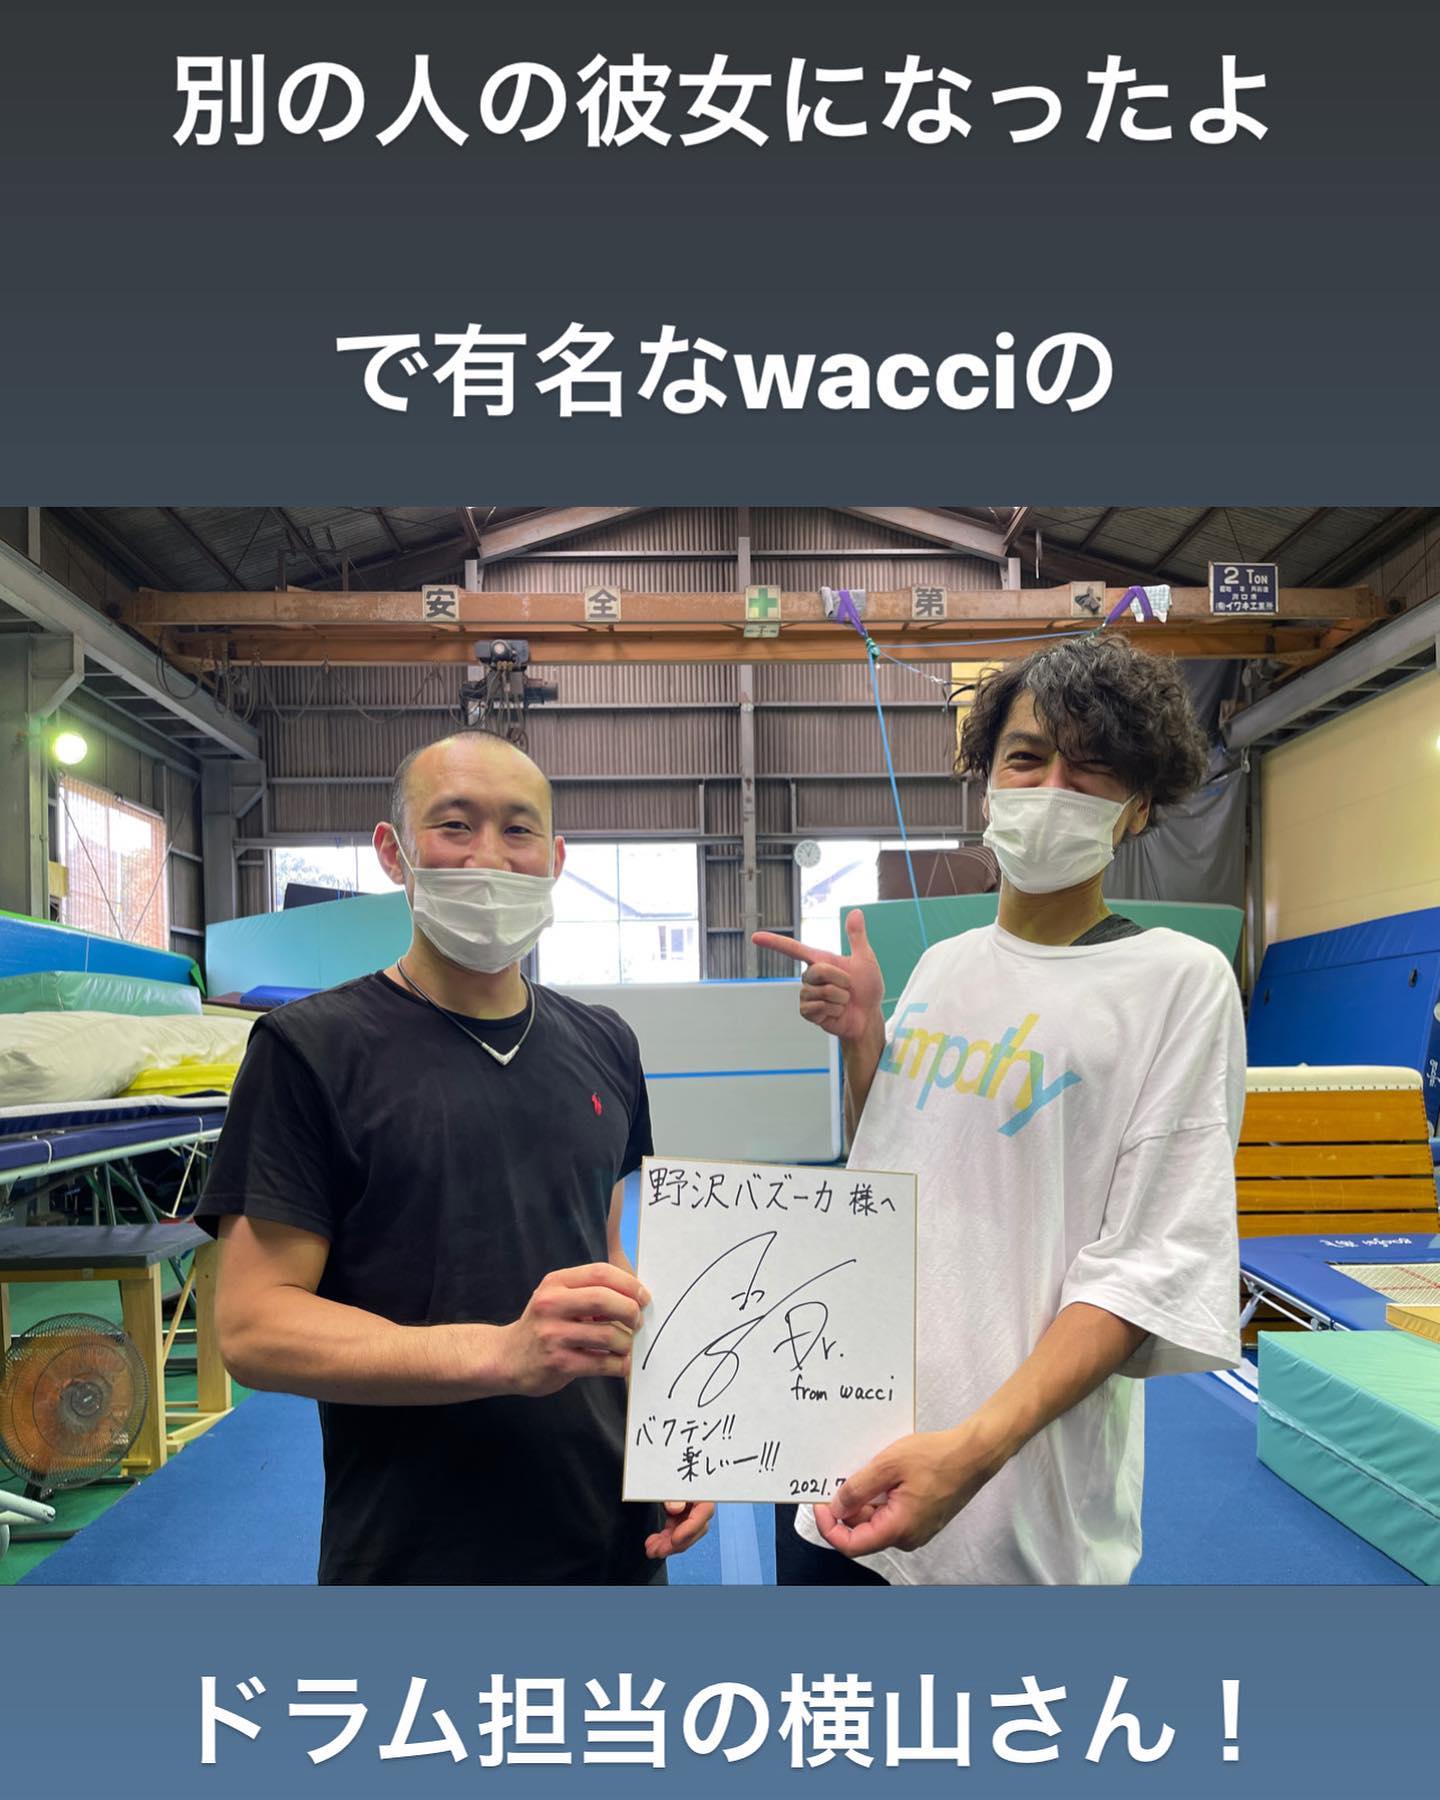 別の人の彼女になったよで有名なwacciのドラム担当横山さんがバク転に挑戦されました。詳細はwacciファンクラブから！